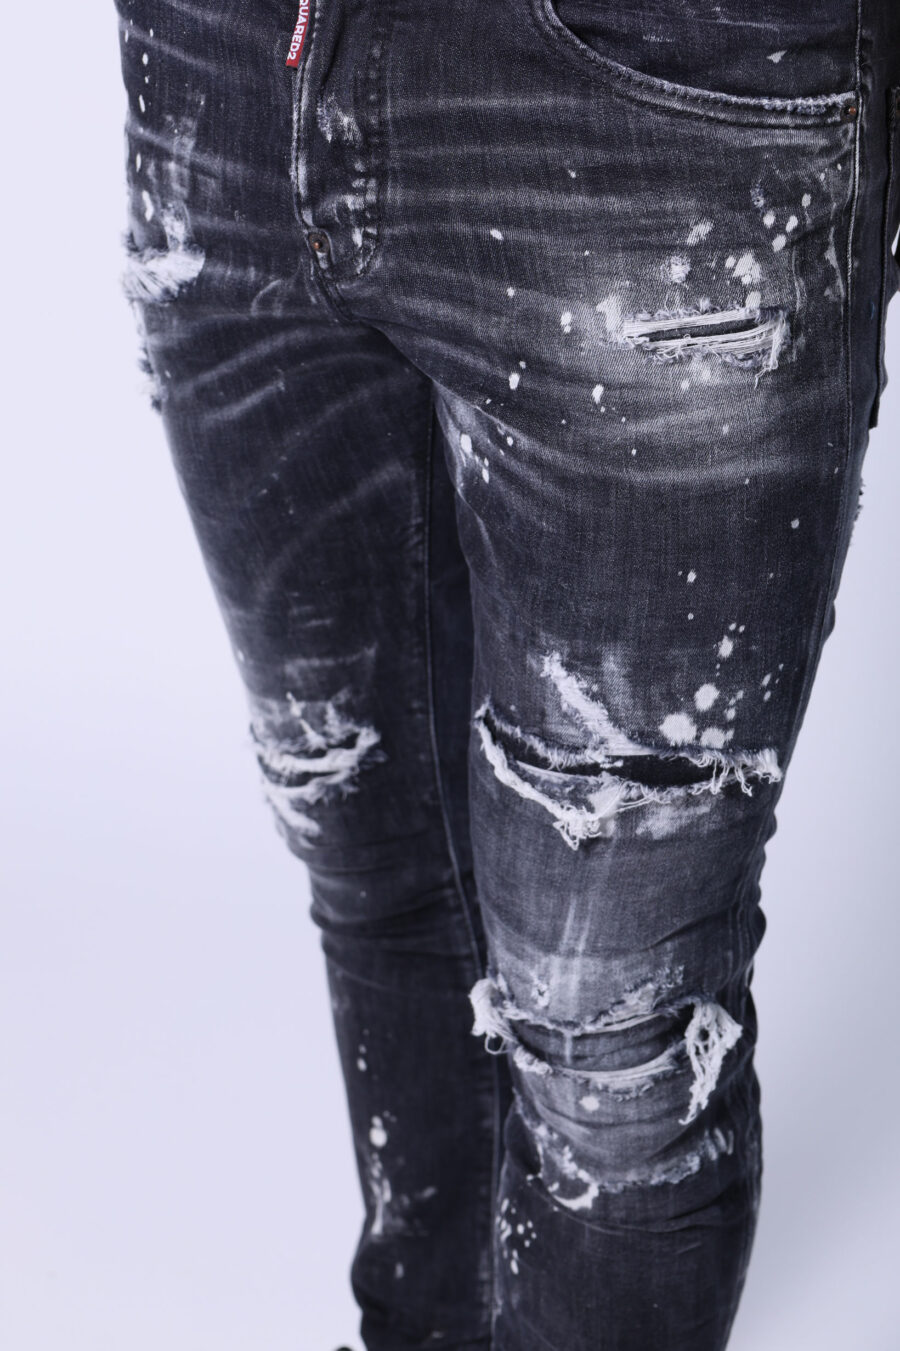 Pantalon skater en jean noir usé et déchiré - Untitled Catalog 05547